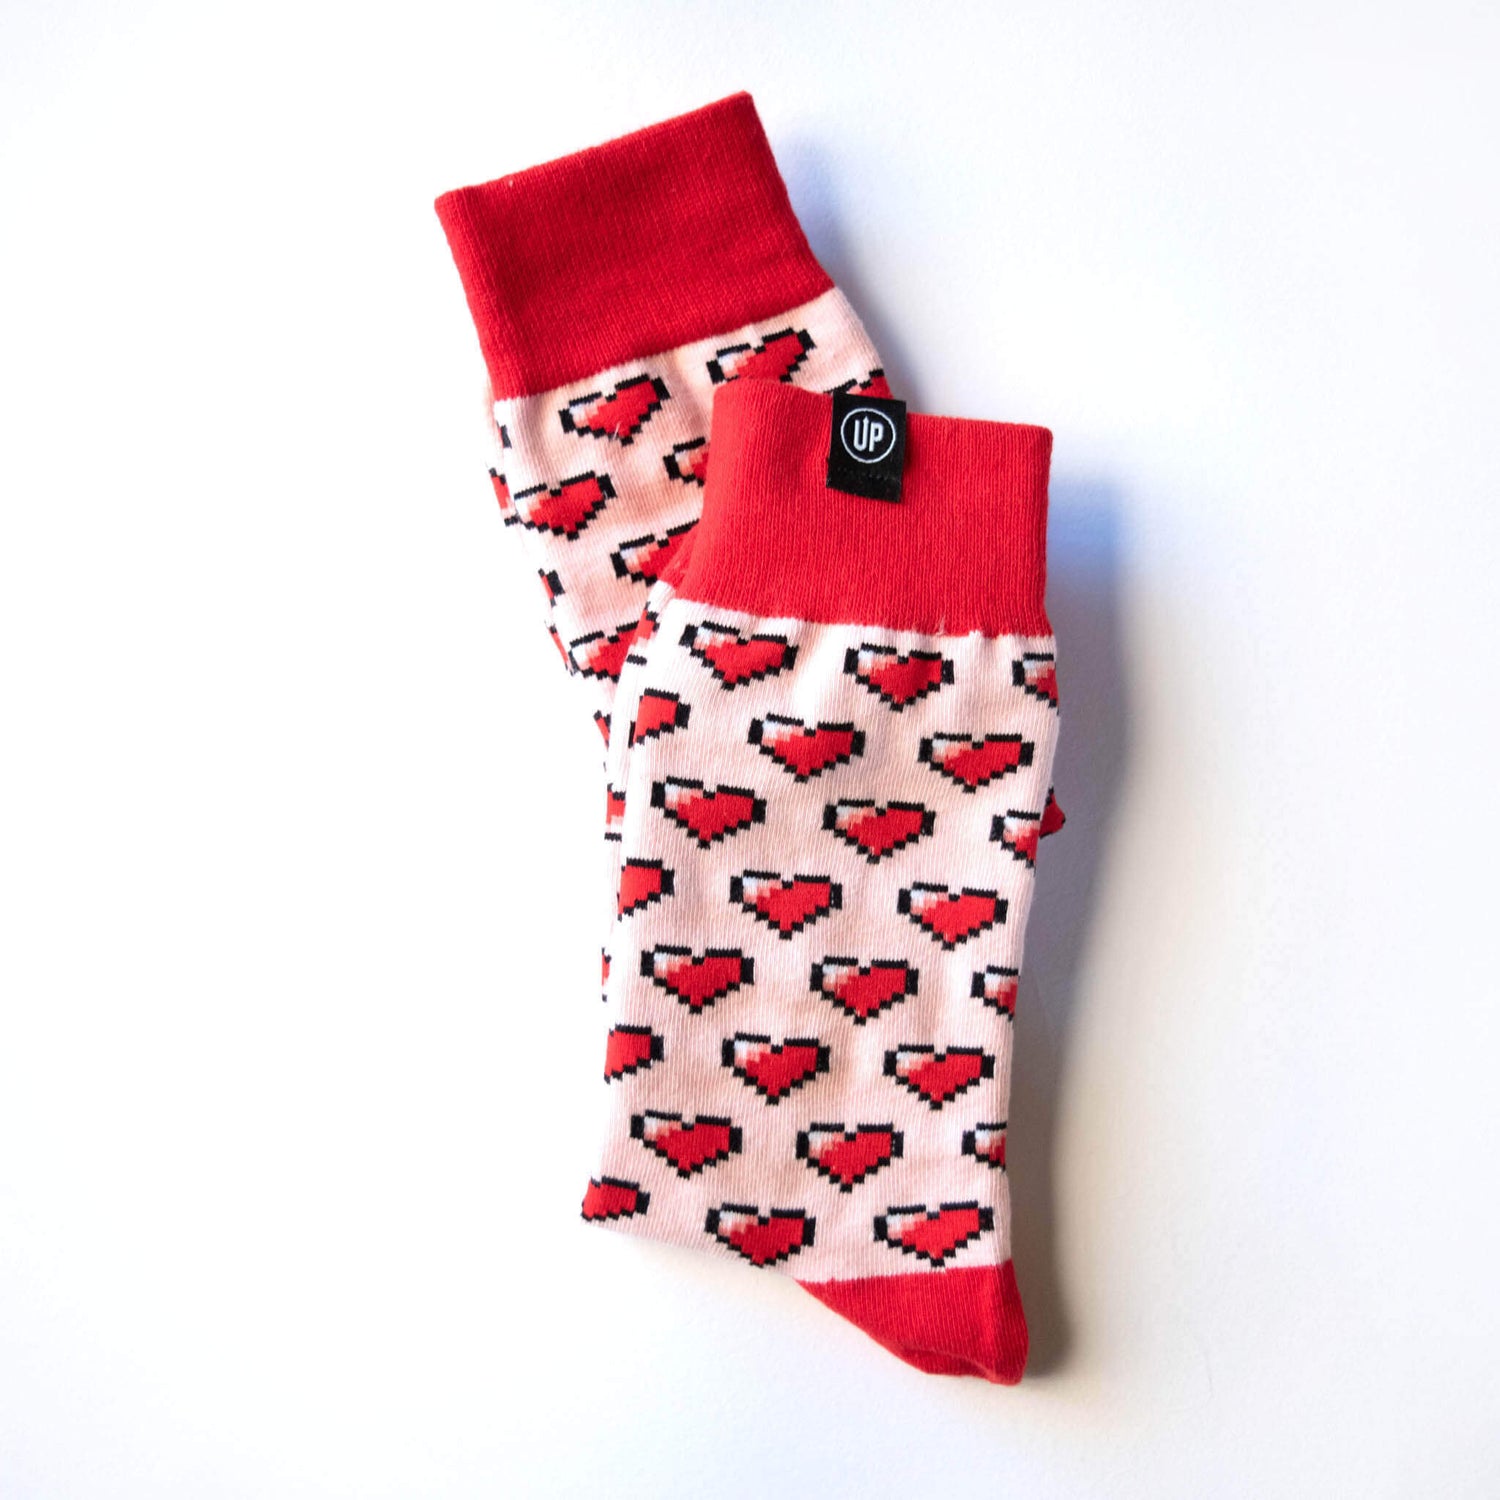 Australian Colourful Socks Sweet Heart Design